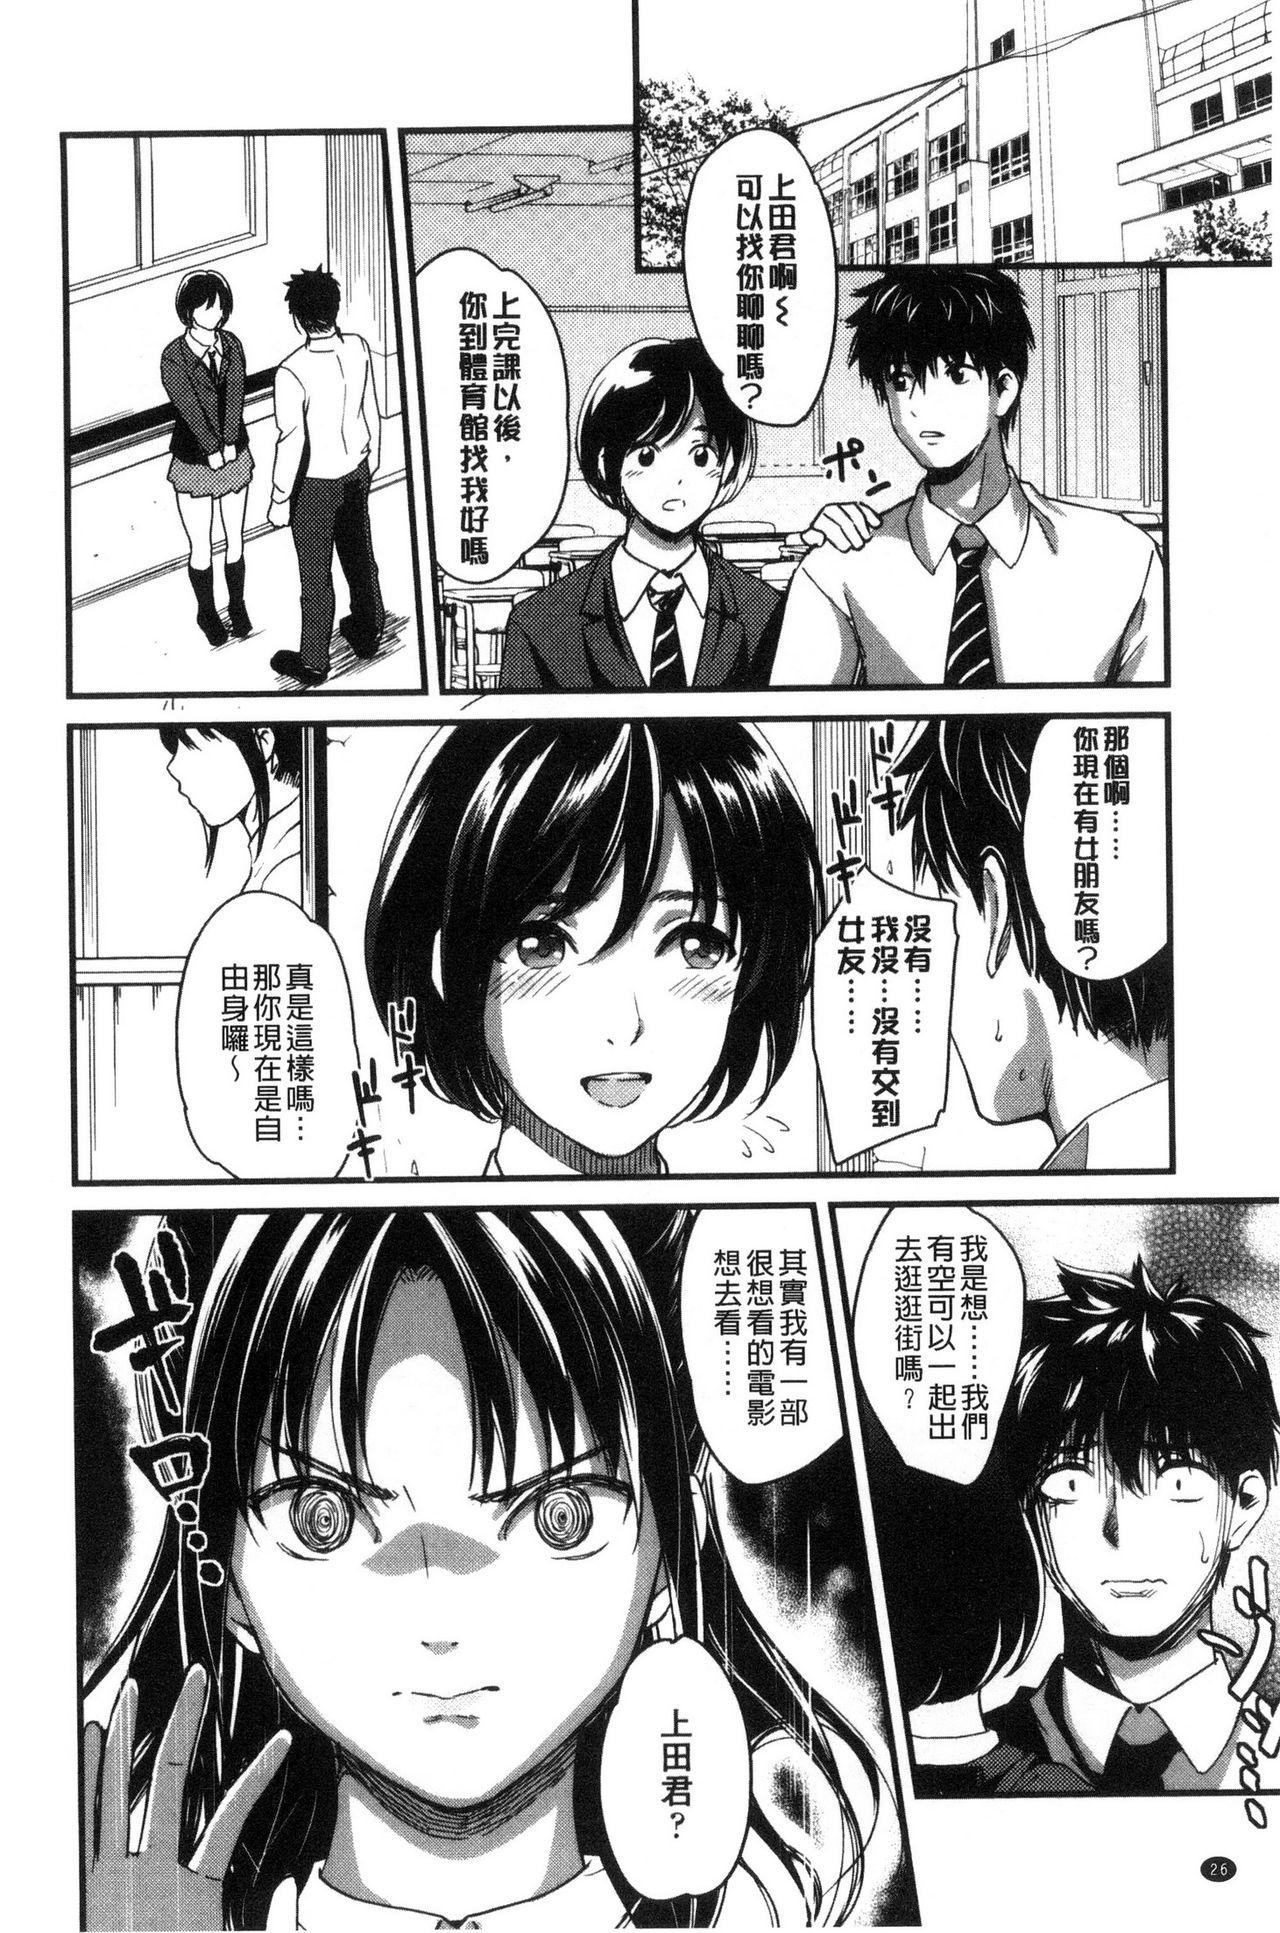 Seifuku no Mama Aishinasai! - Love in school uniform 27